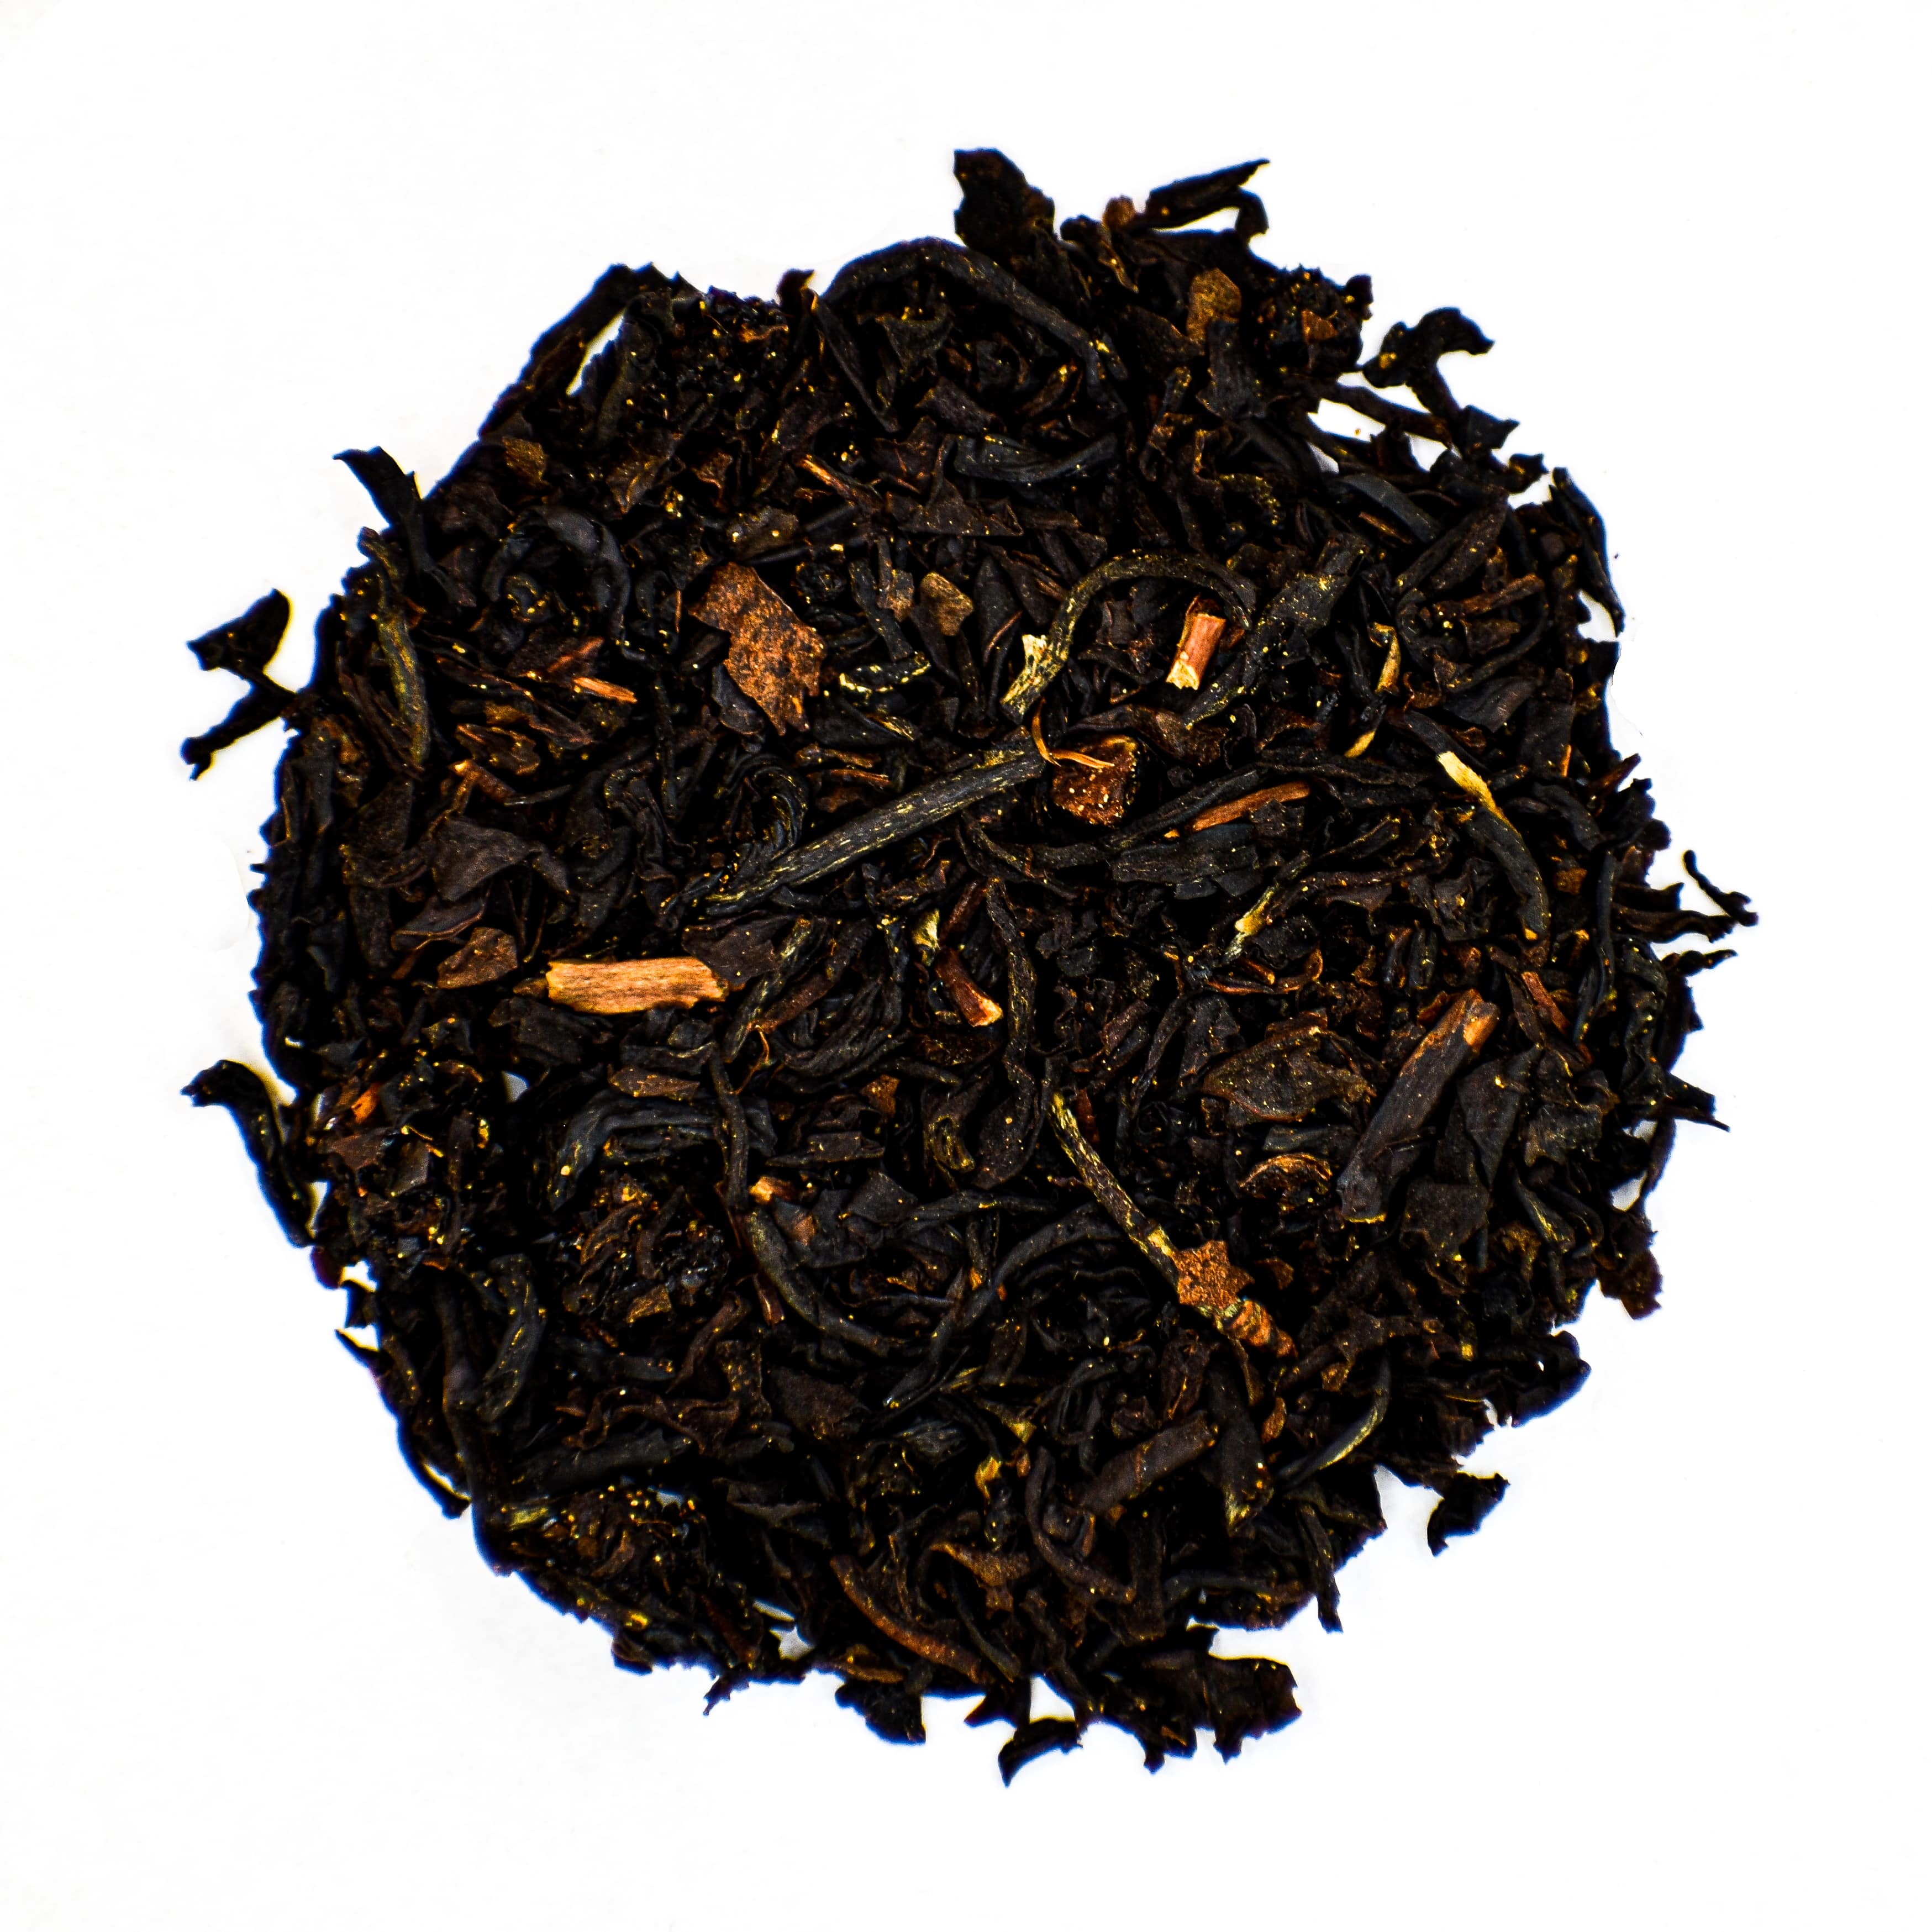 Lekkere losse zwarte thee met Zwarte thee Assam Zwarte thee Golden Yunnan Chicorei Walnoot Karamel Maca wortel